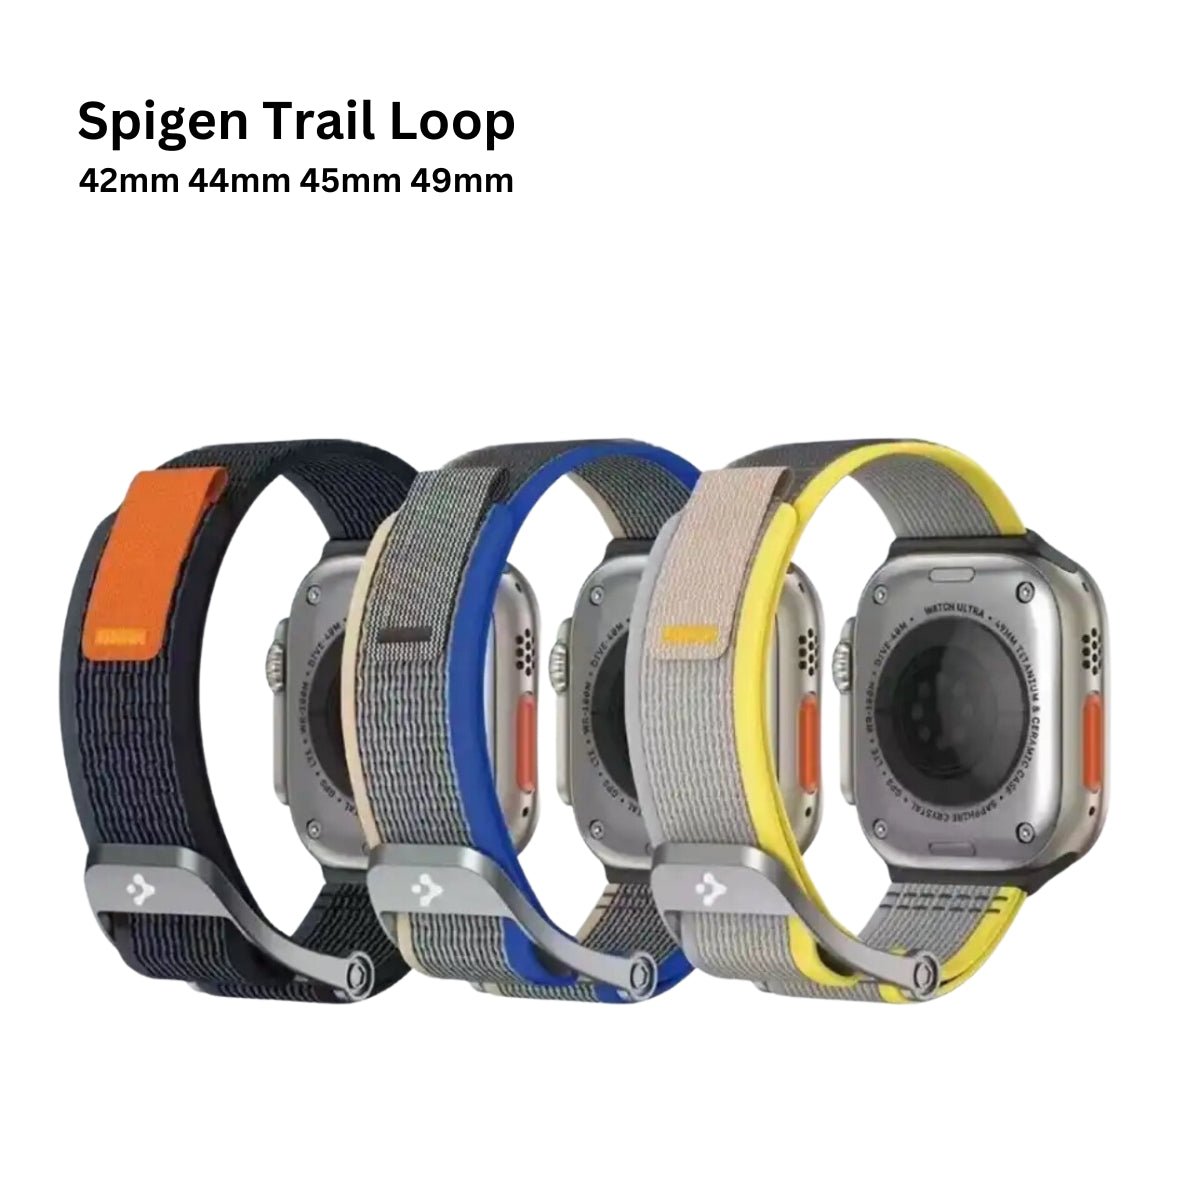 Spigen Trail Loop for Apple Watch 42mm 44mm 45mm 49mm